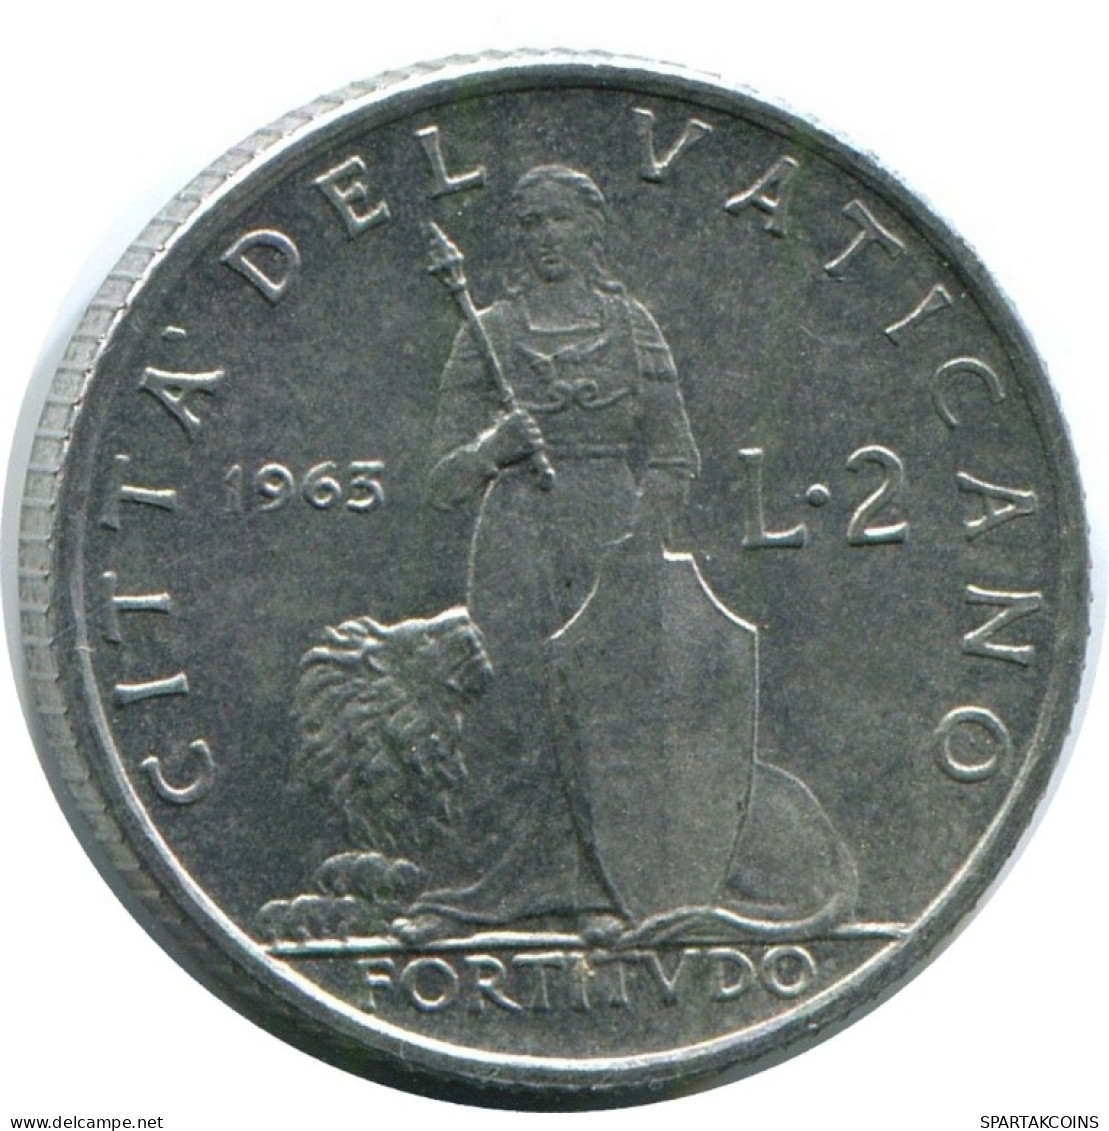 2 LIRE 1963 VATICAN Coin Paul VI (1963-1978) #AH378.13.U.A